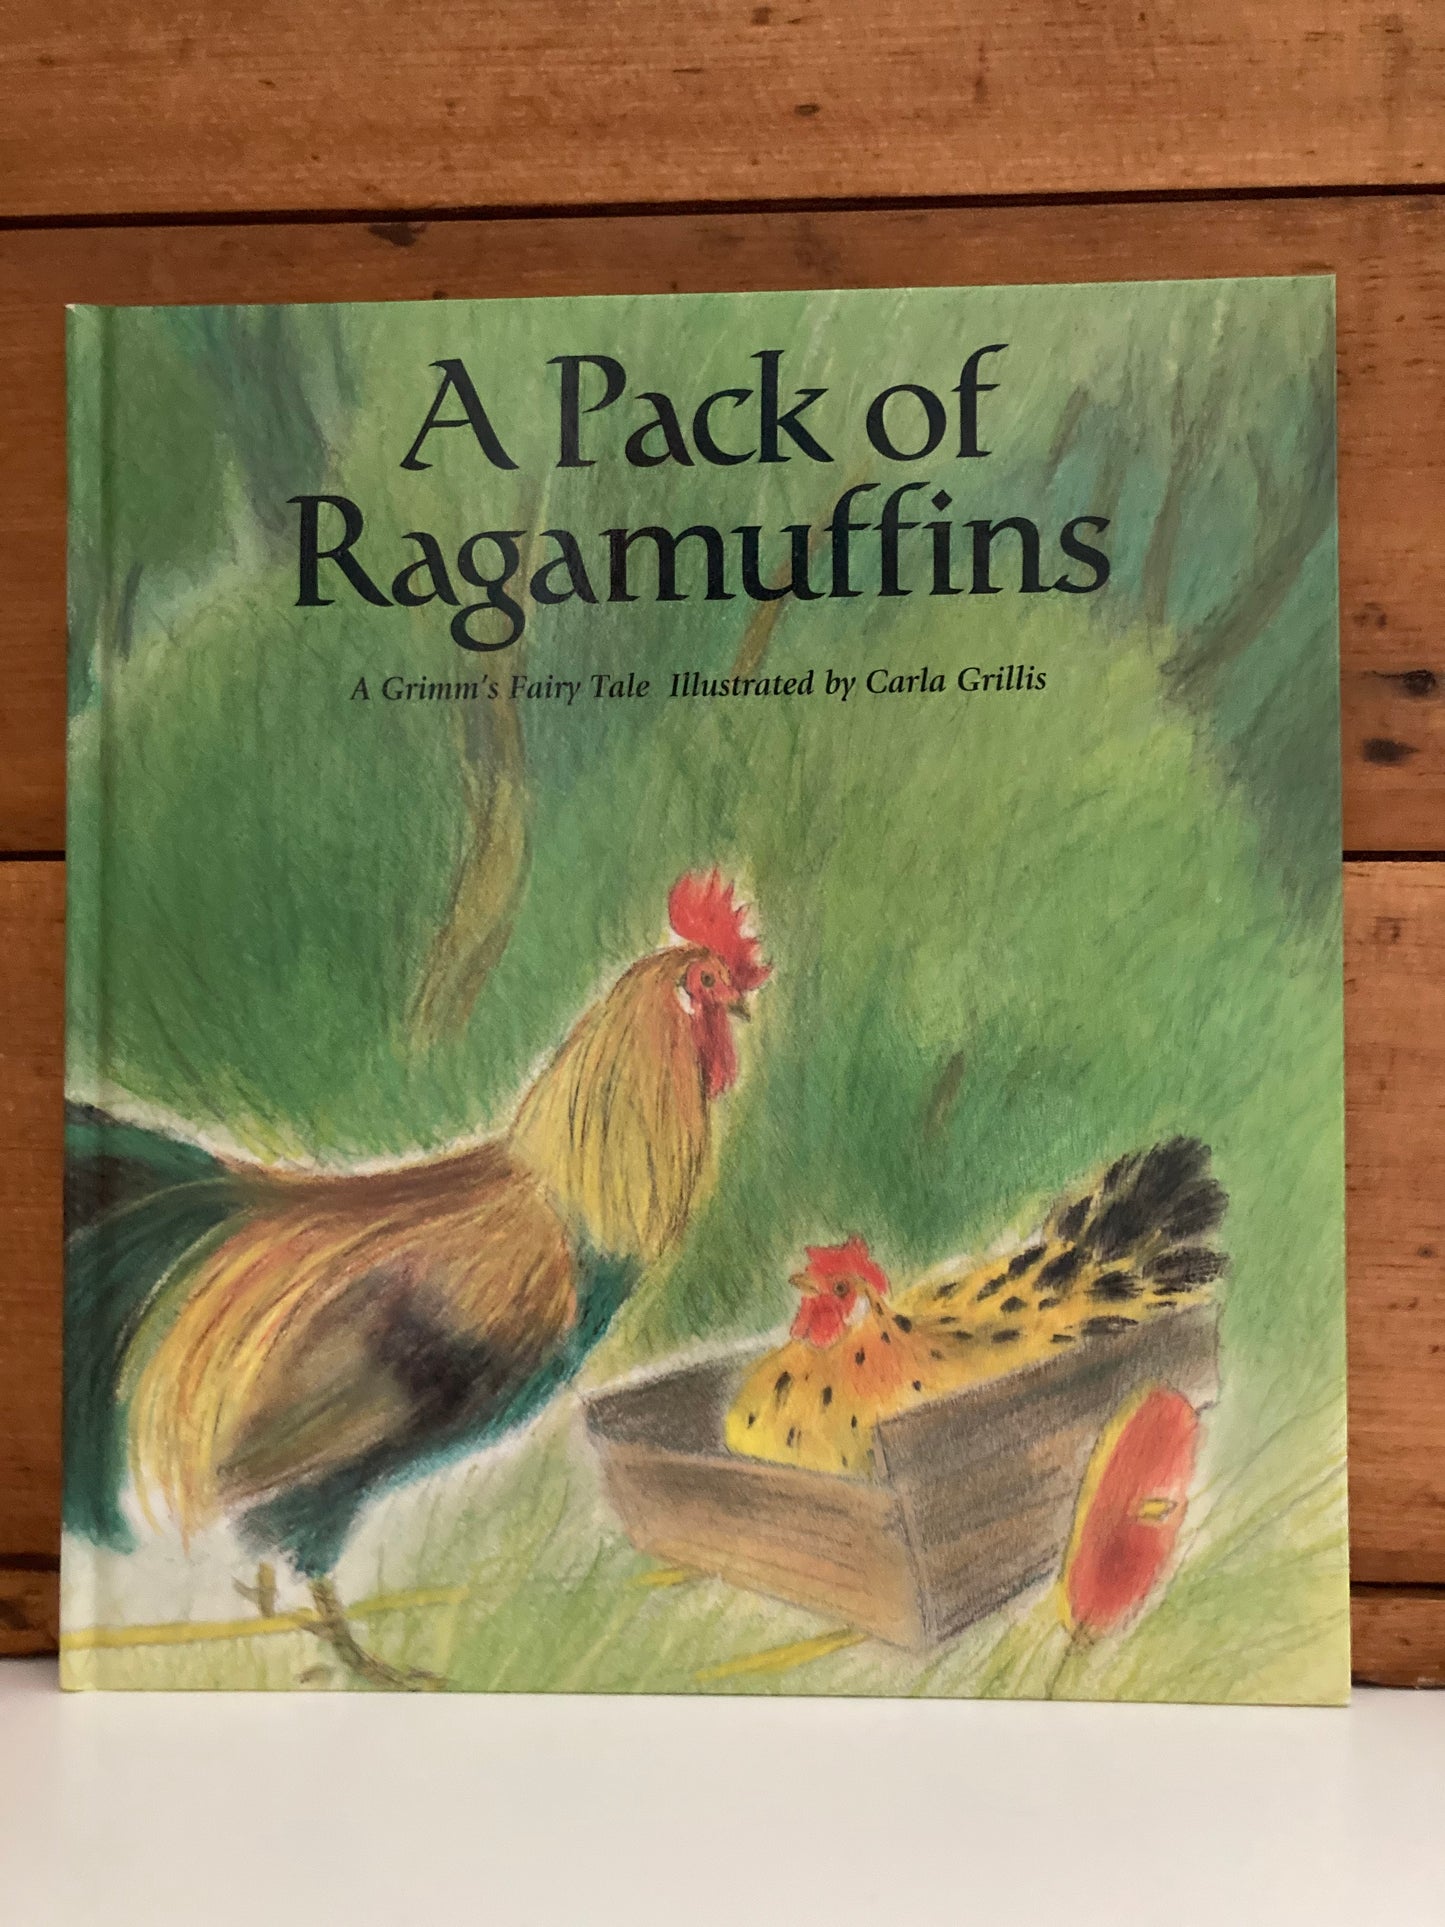 Livre de conte de fées pour enfants - UN PACK DE RAGAMUFFINS